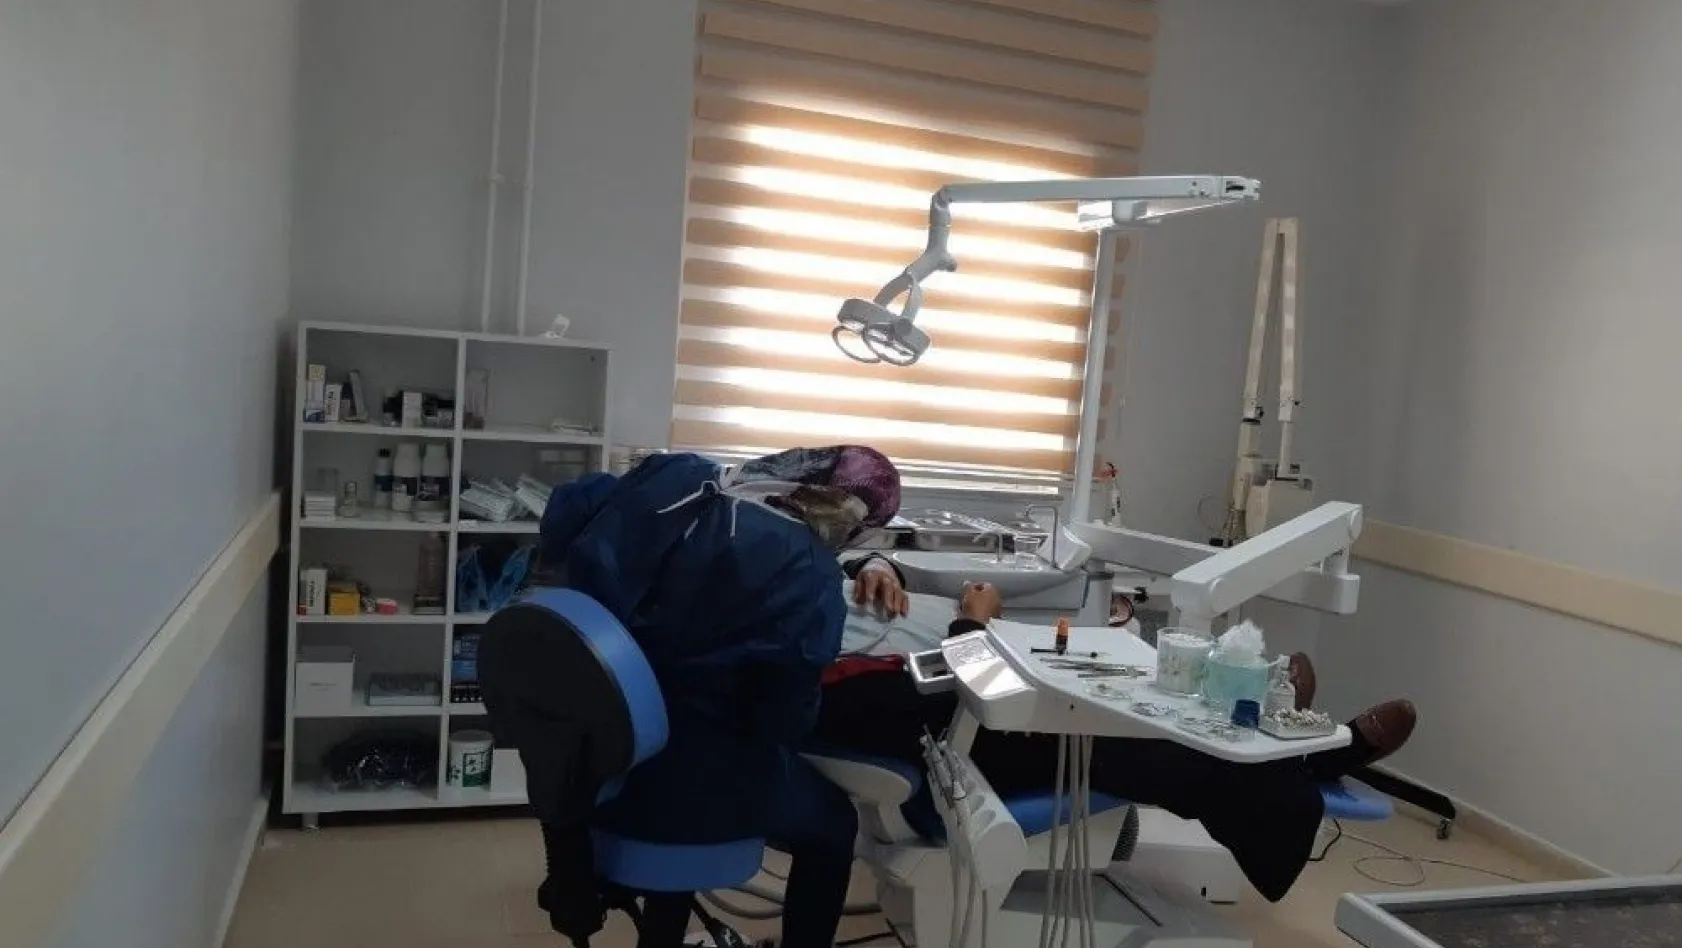 Sincik İlçe Devlet Hastanesine yeni diş ünitesi
